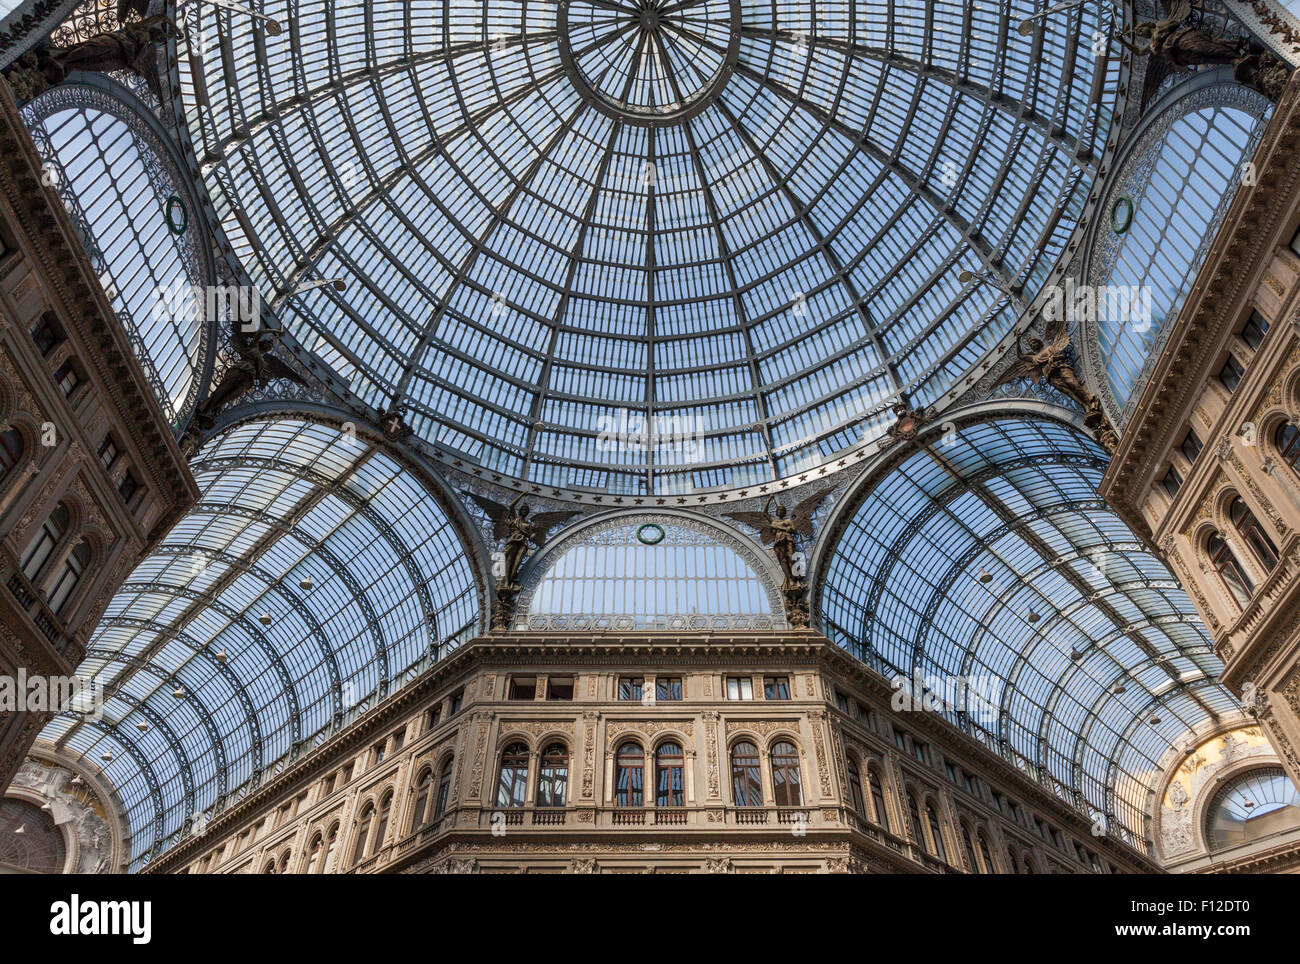 Cúpula de vidrio y bóvedas de la Galleria Umberto I de Nápoles, Italia Foto de stock